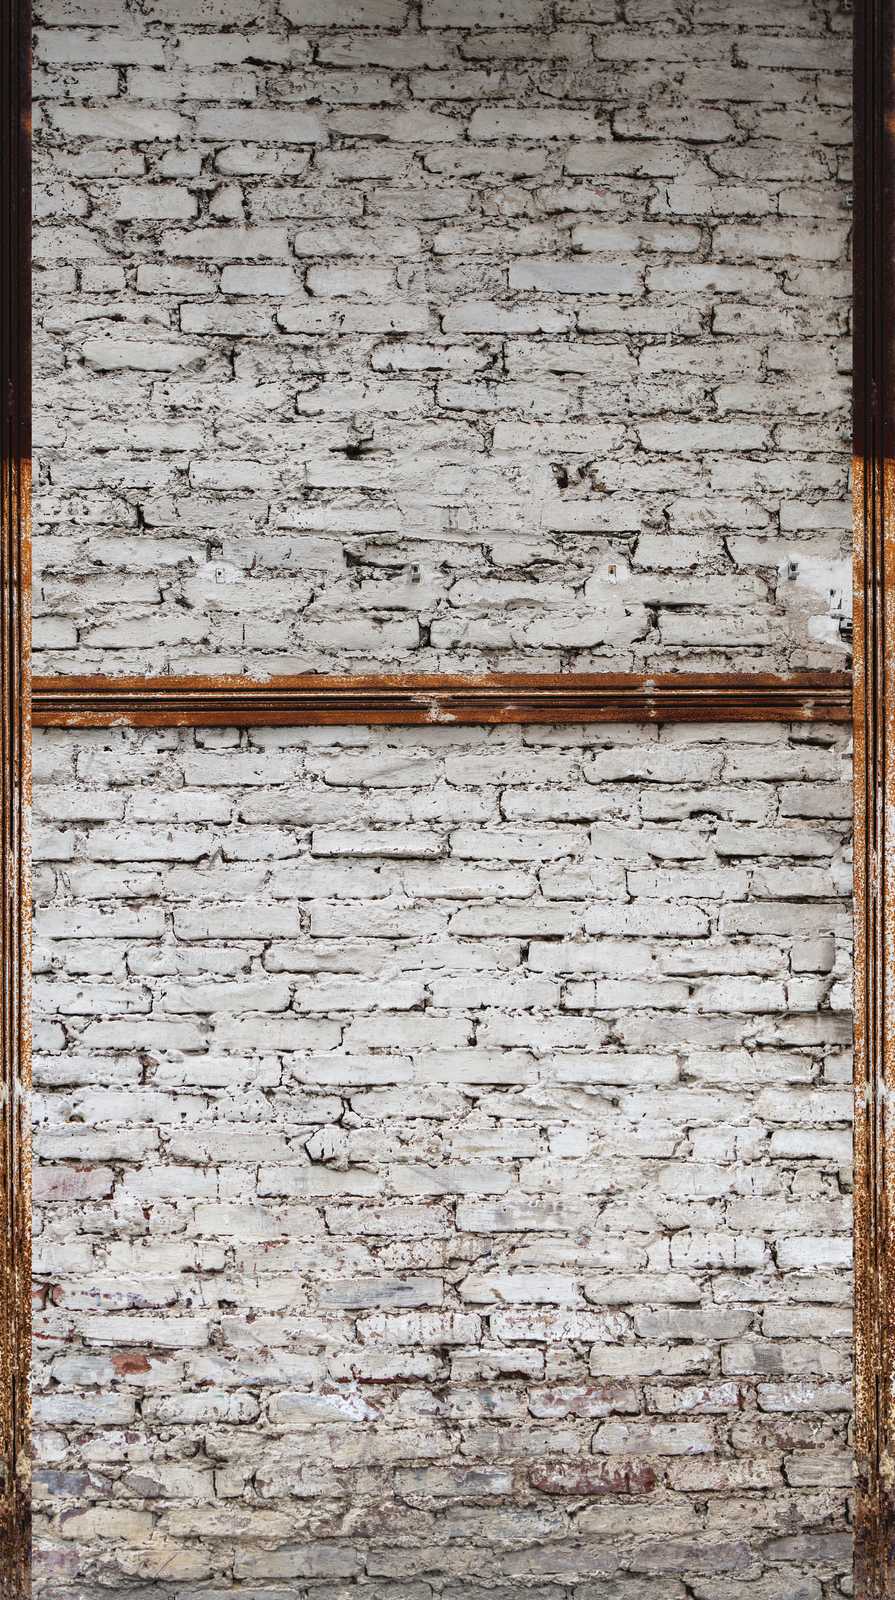             Behang nieuwigheid - stenen muur motief behang 3D witte baksteen
        